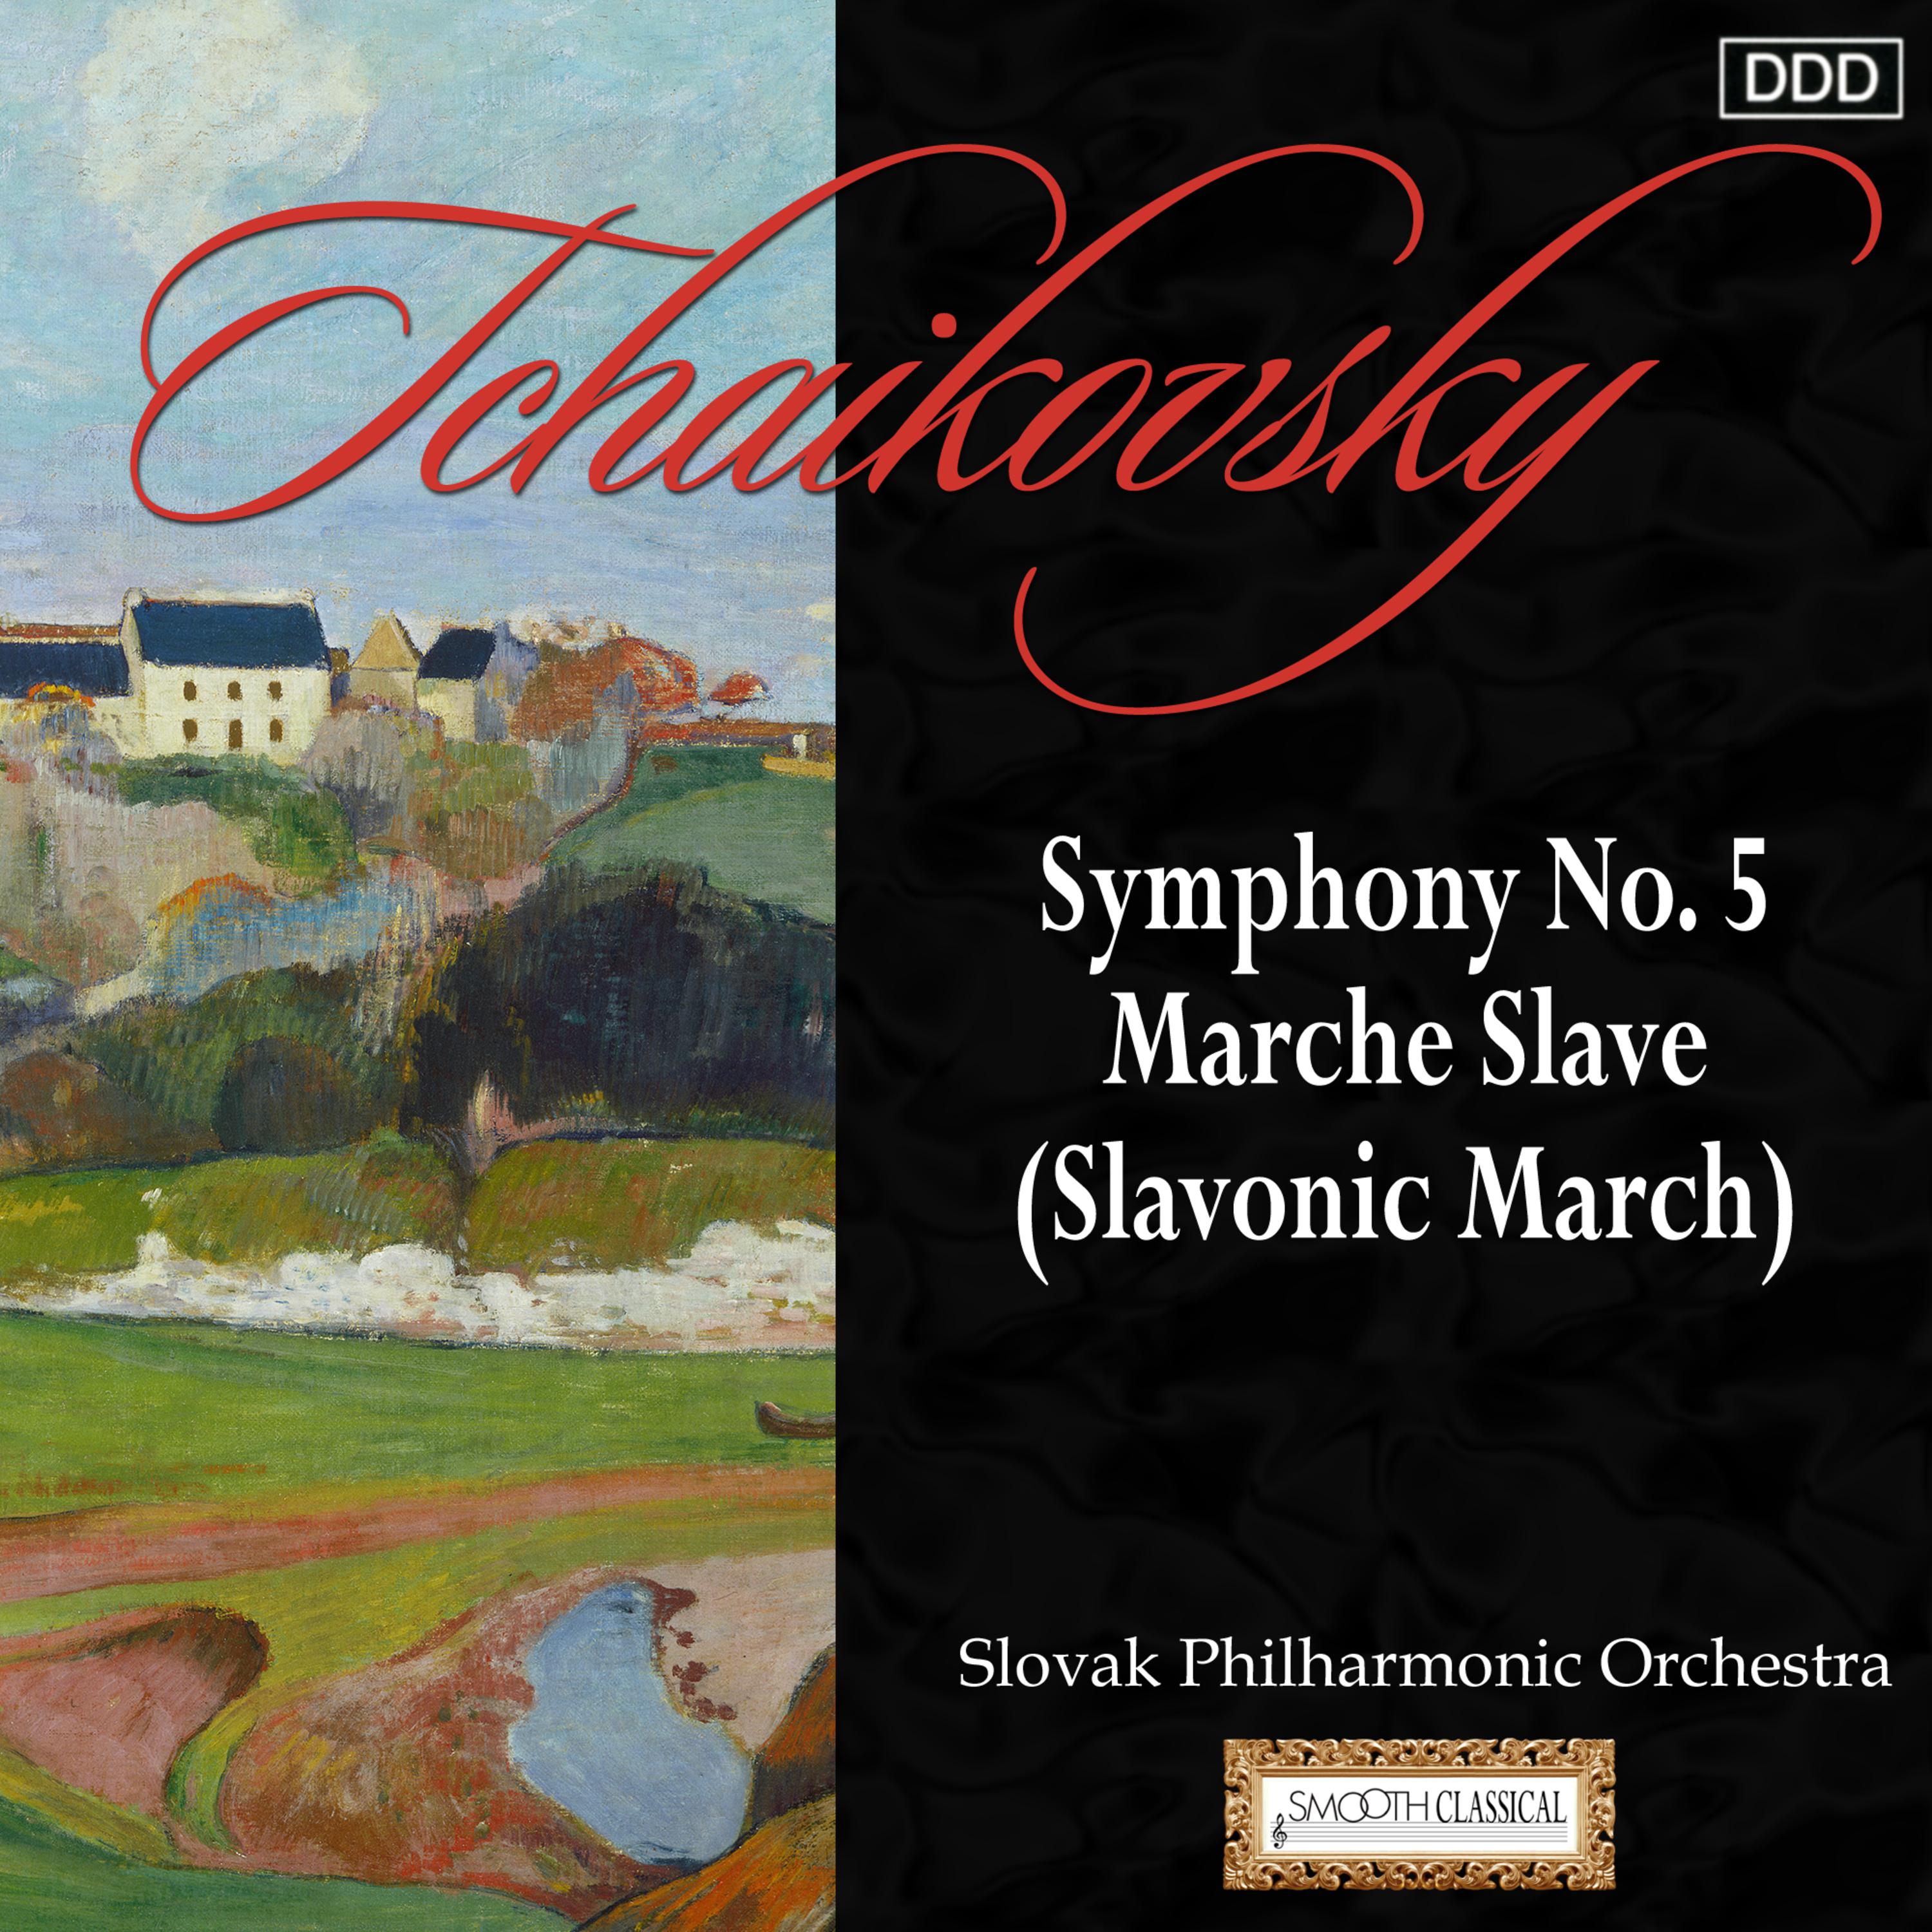 Symphony No. 5 in E Minor, Op. 64, TH 29: IV. Andante maestoso - Allegro vivace